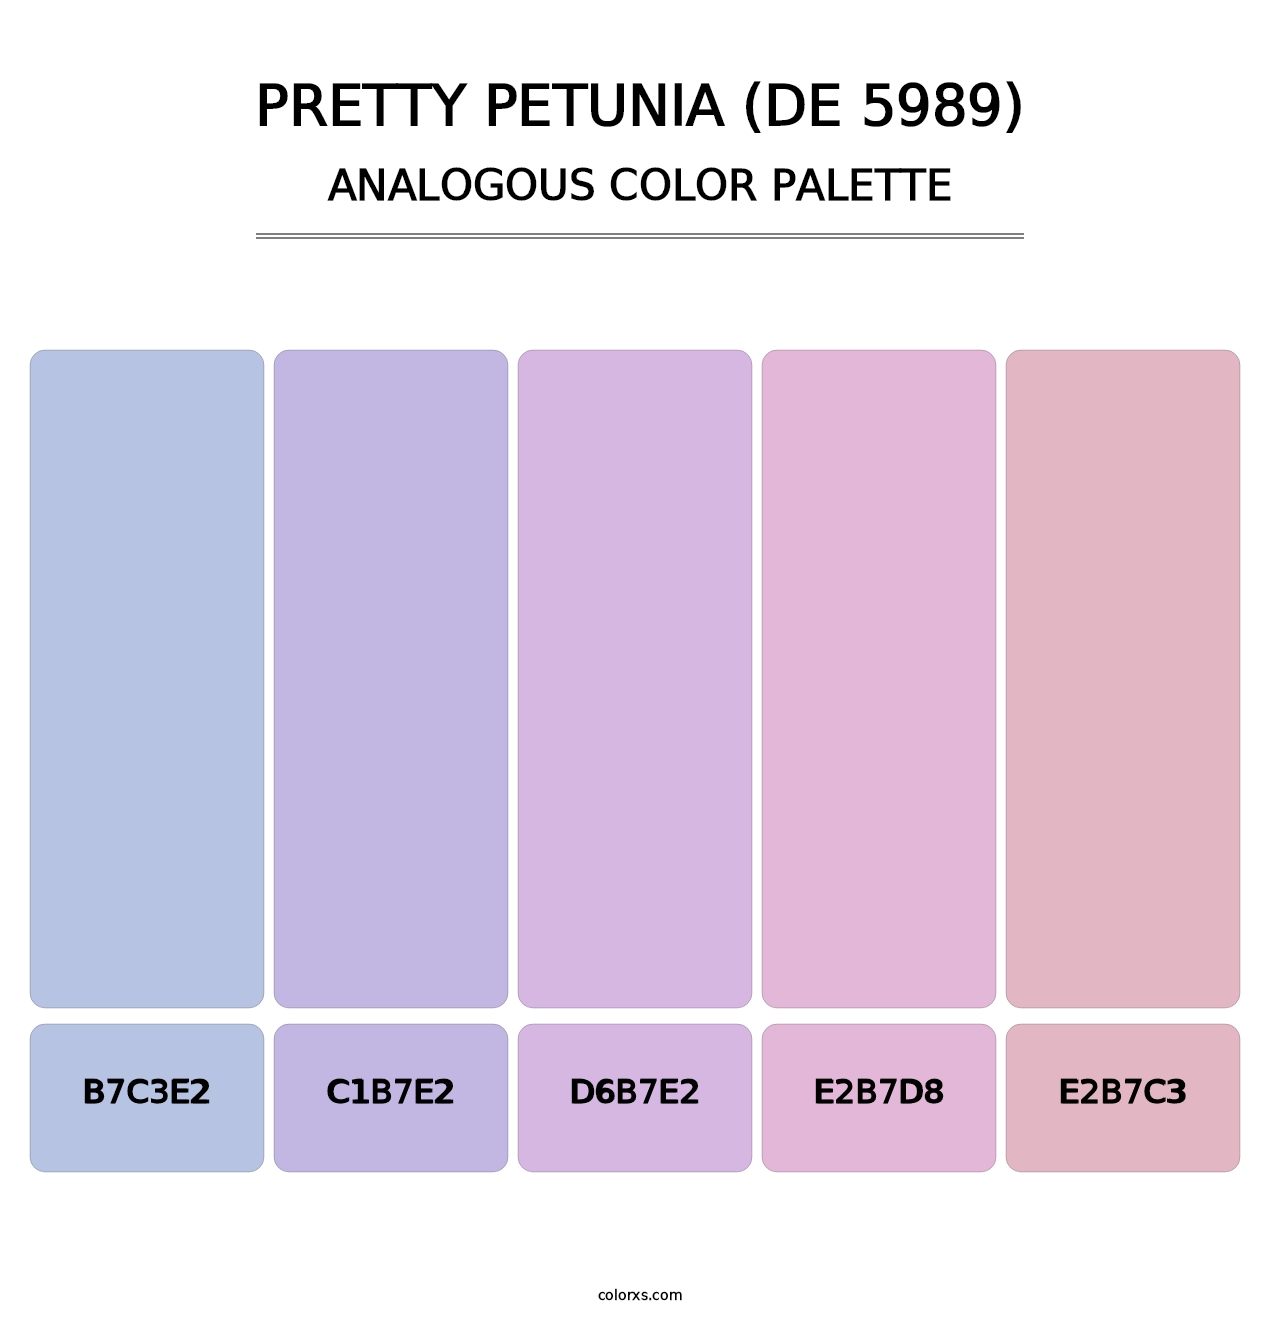 Pretty Petunia (DE 5989) - Analogous Color Palette